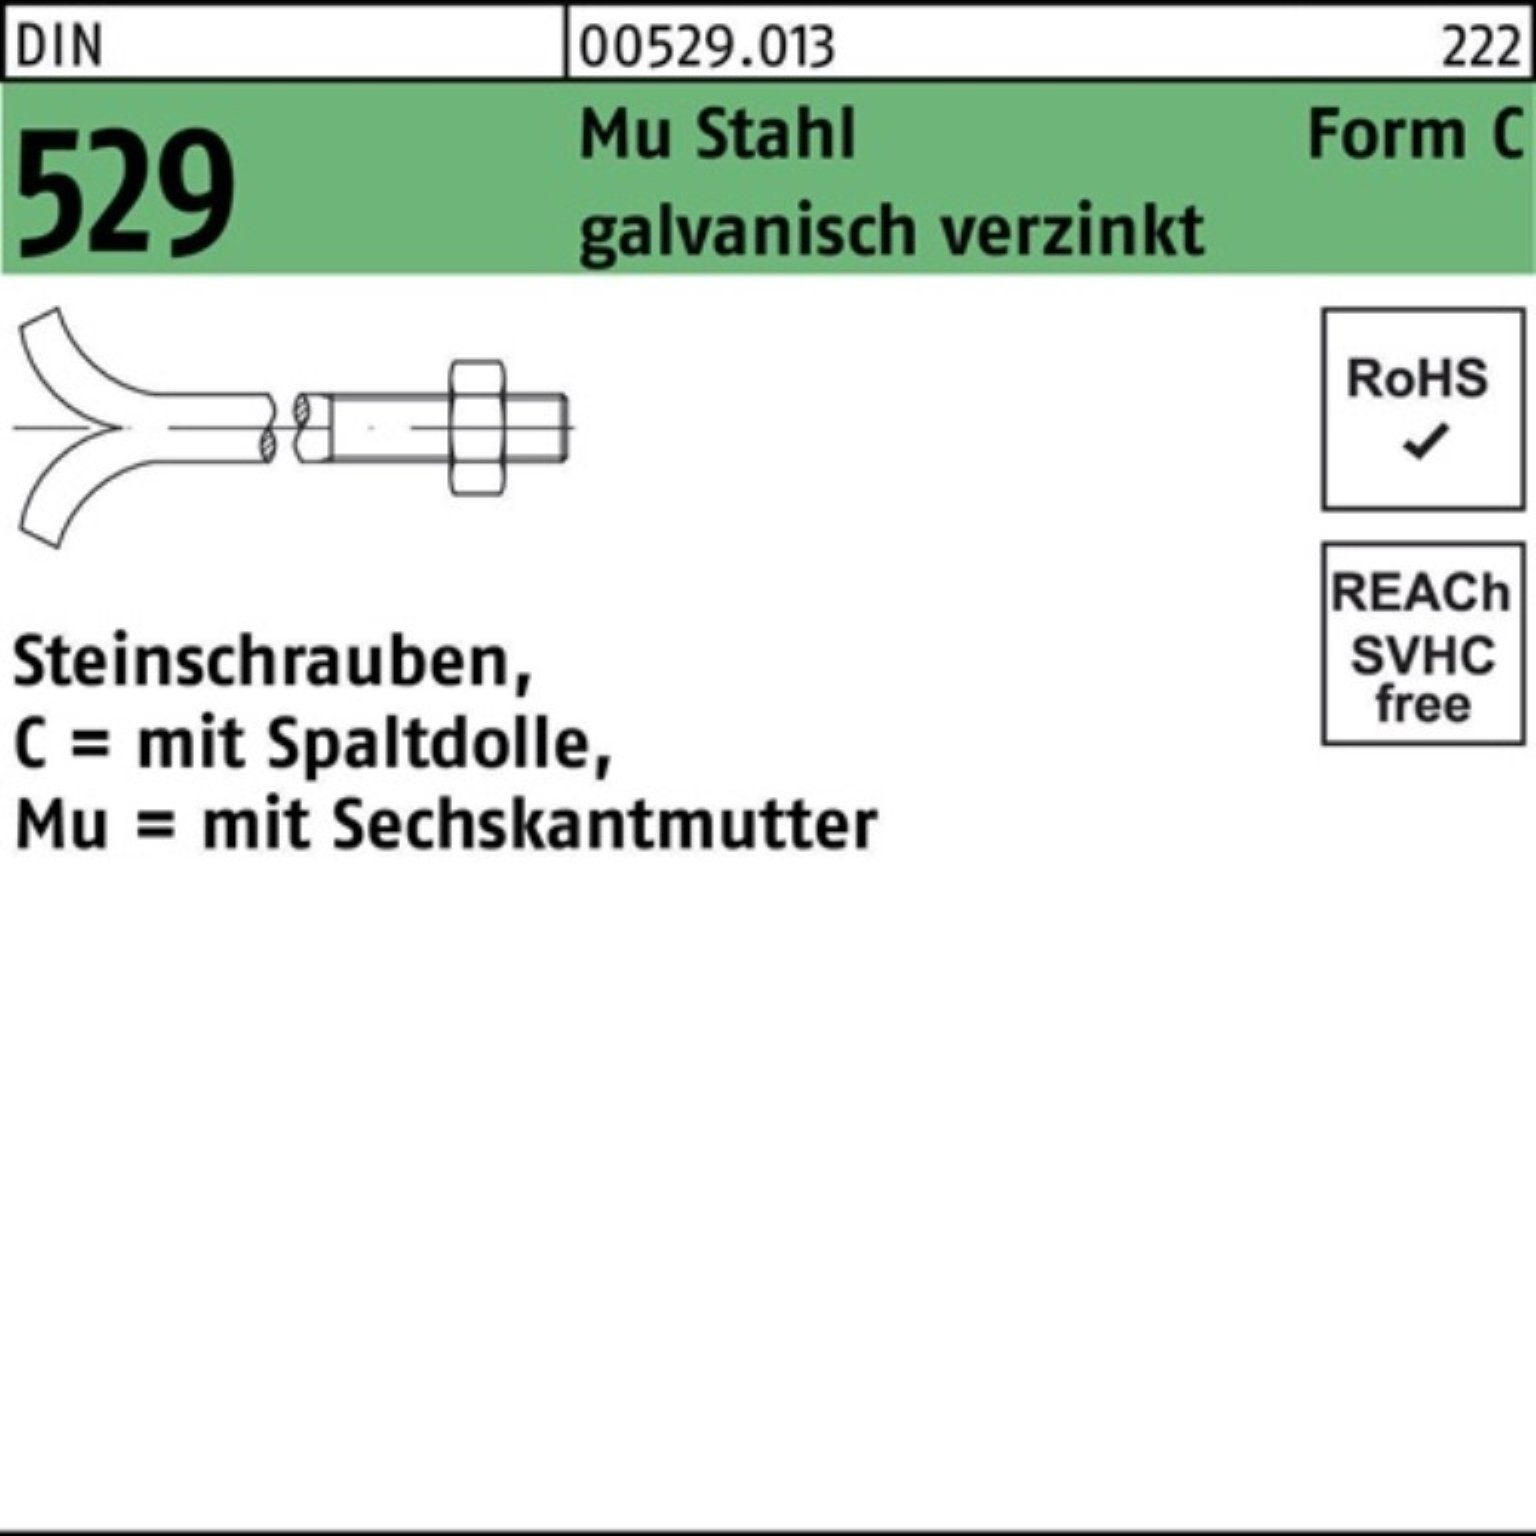 Reyher Schraube 100er Pack Steinschraube DIN 529 Spaltdolle/6-ktmutter CM 16x100 Mu 3.